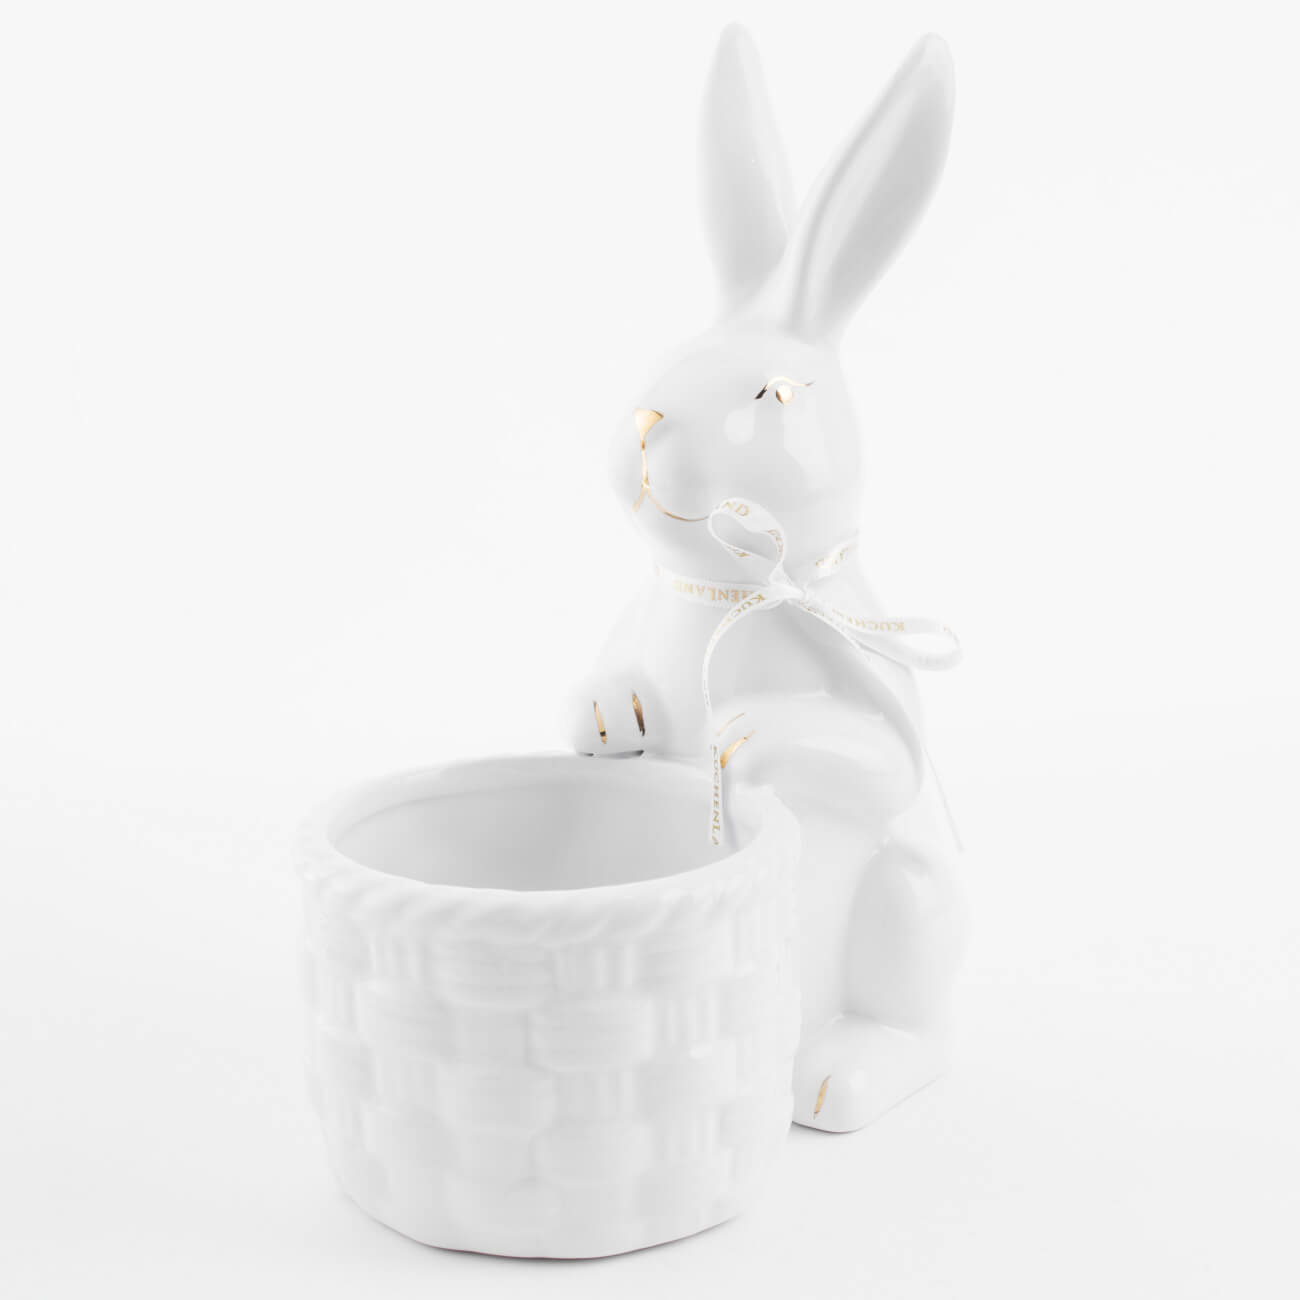 Конфетница, 18x23 см, керамика, бело-золотистая, Кролик с плетенной корзиной, Easter gold подставка для яйца 11 см керамика бело золотистая кролик со скорлупой easter gold